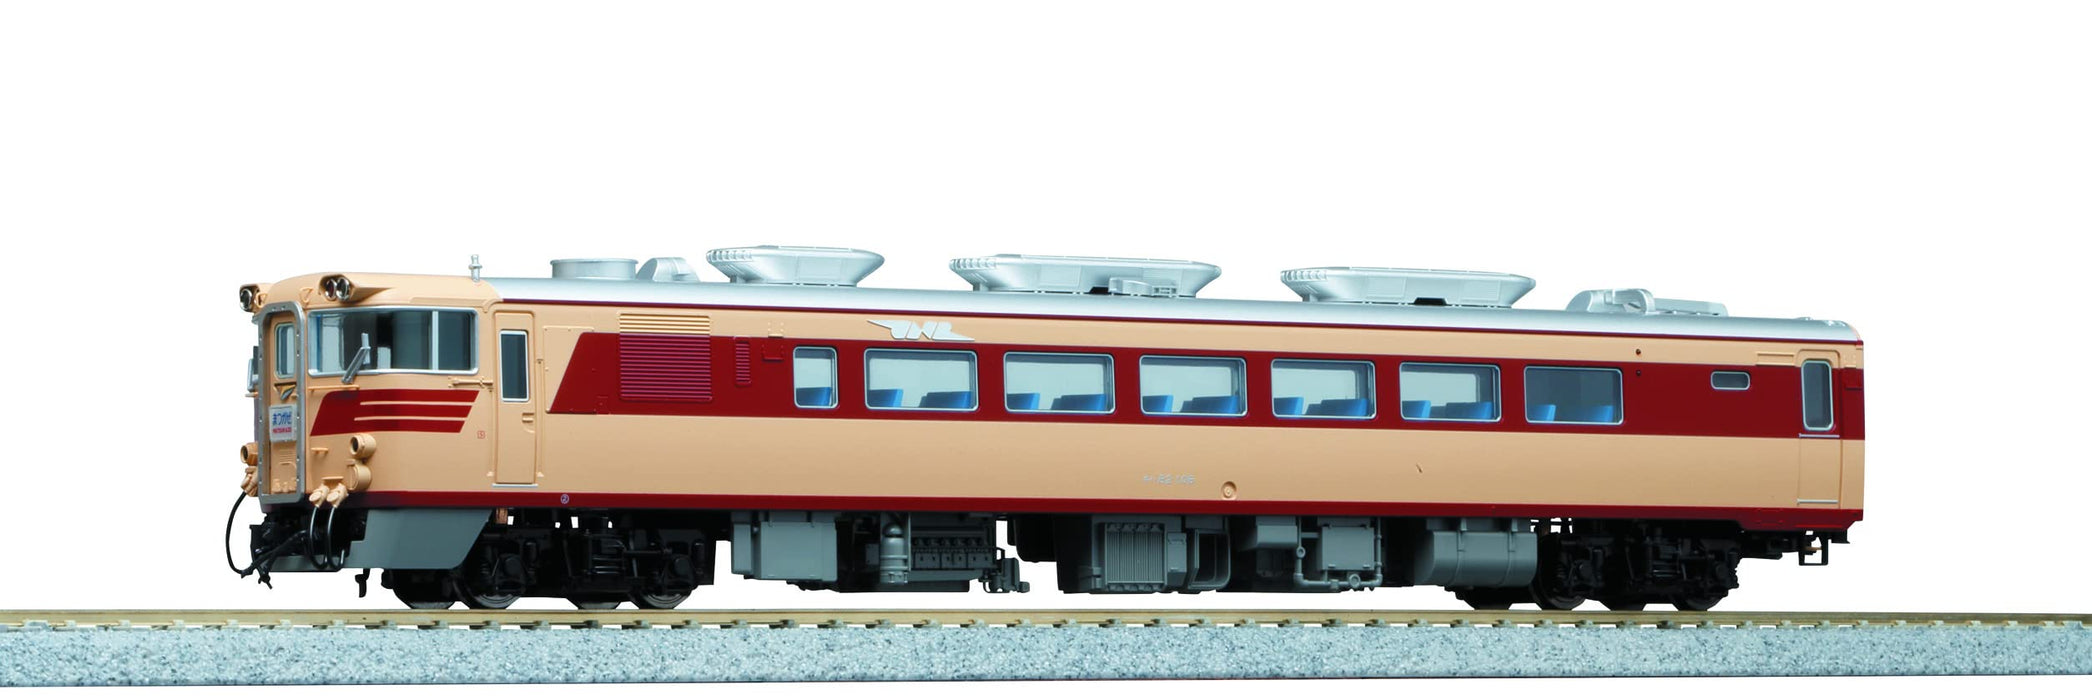 Kato Kiha82 Diesel Model Train HO Gauge Railway Car 1-607-1 Series